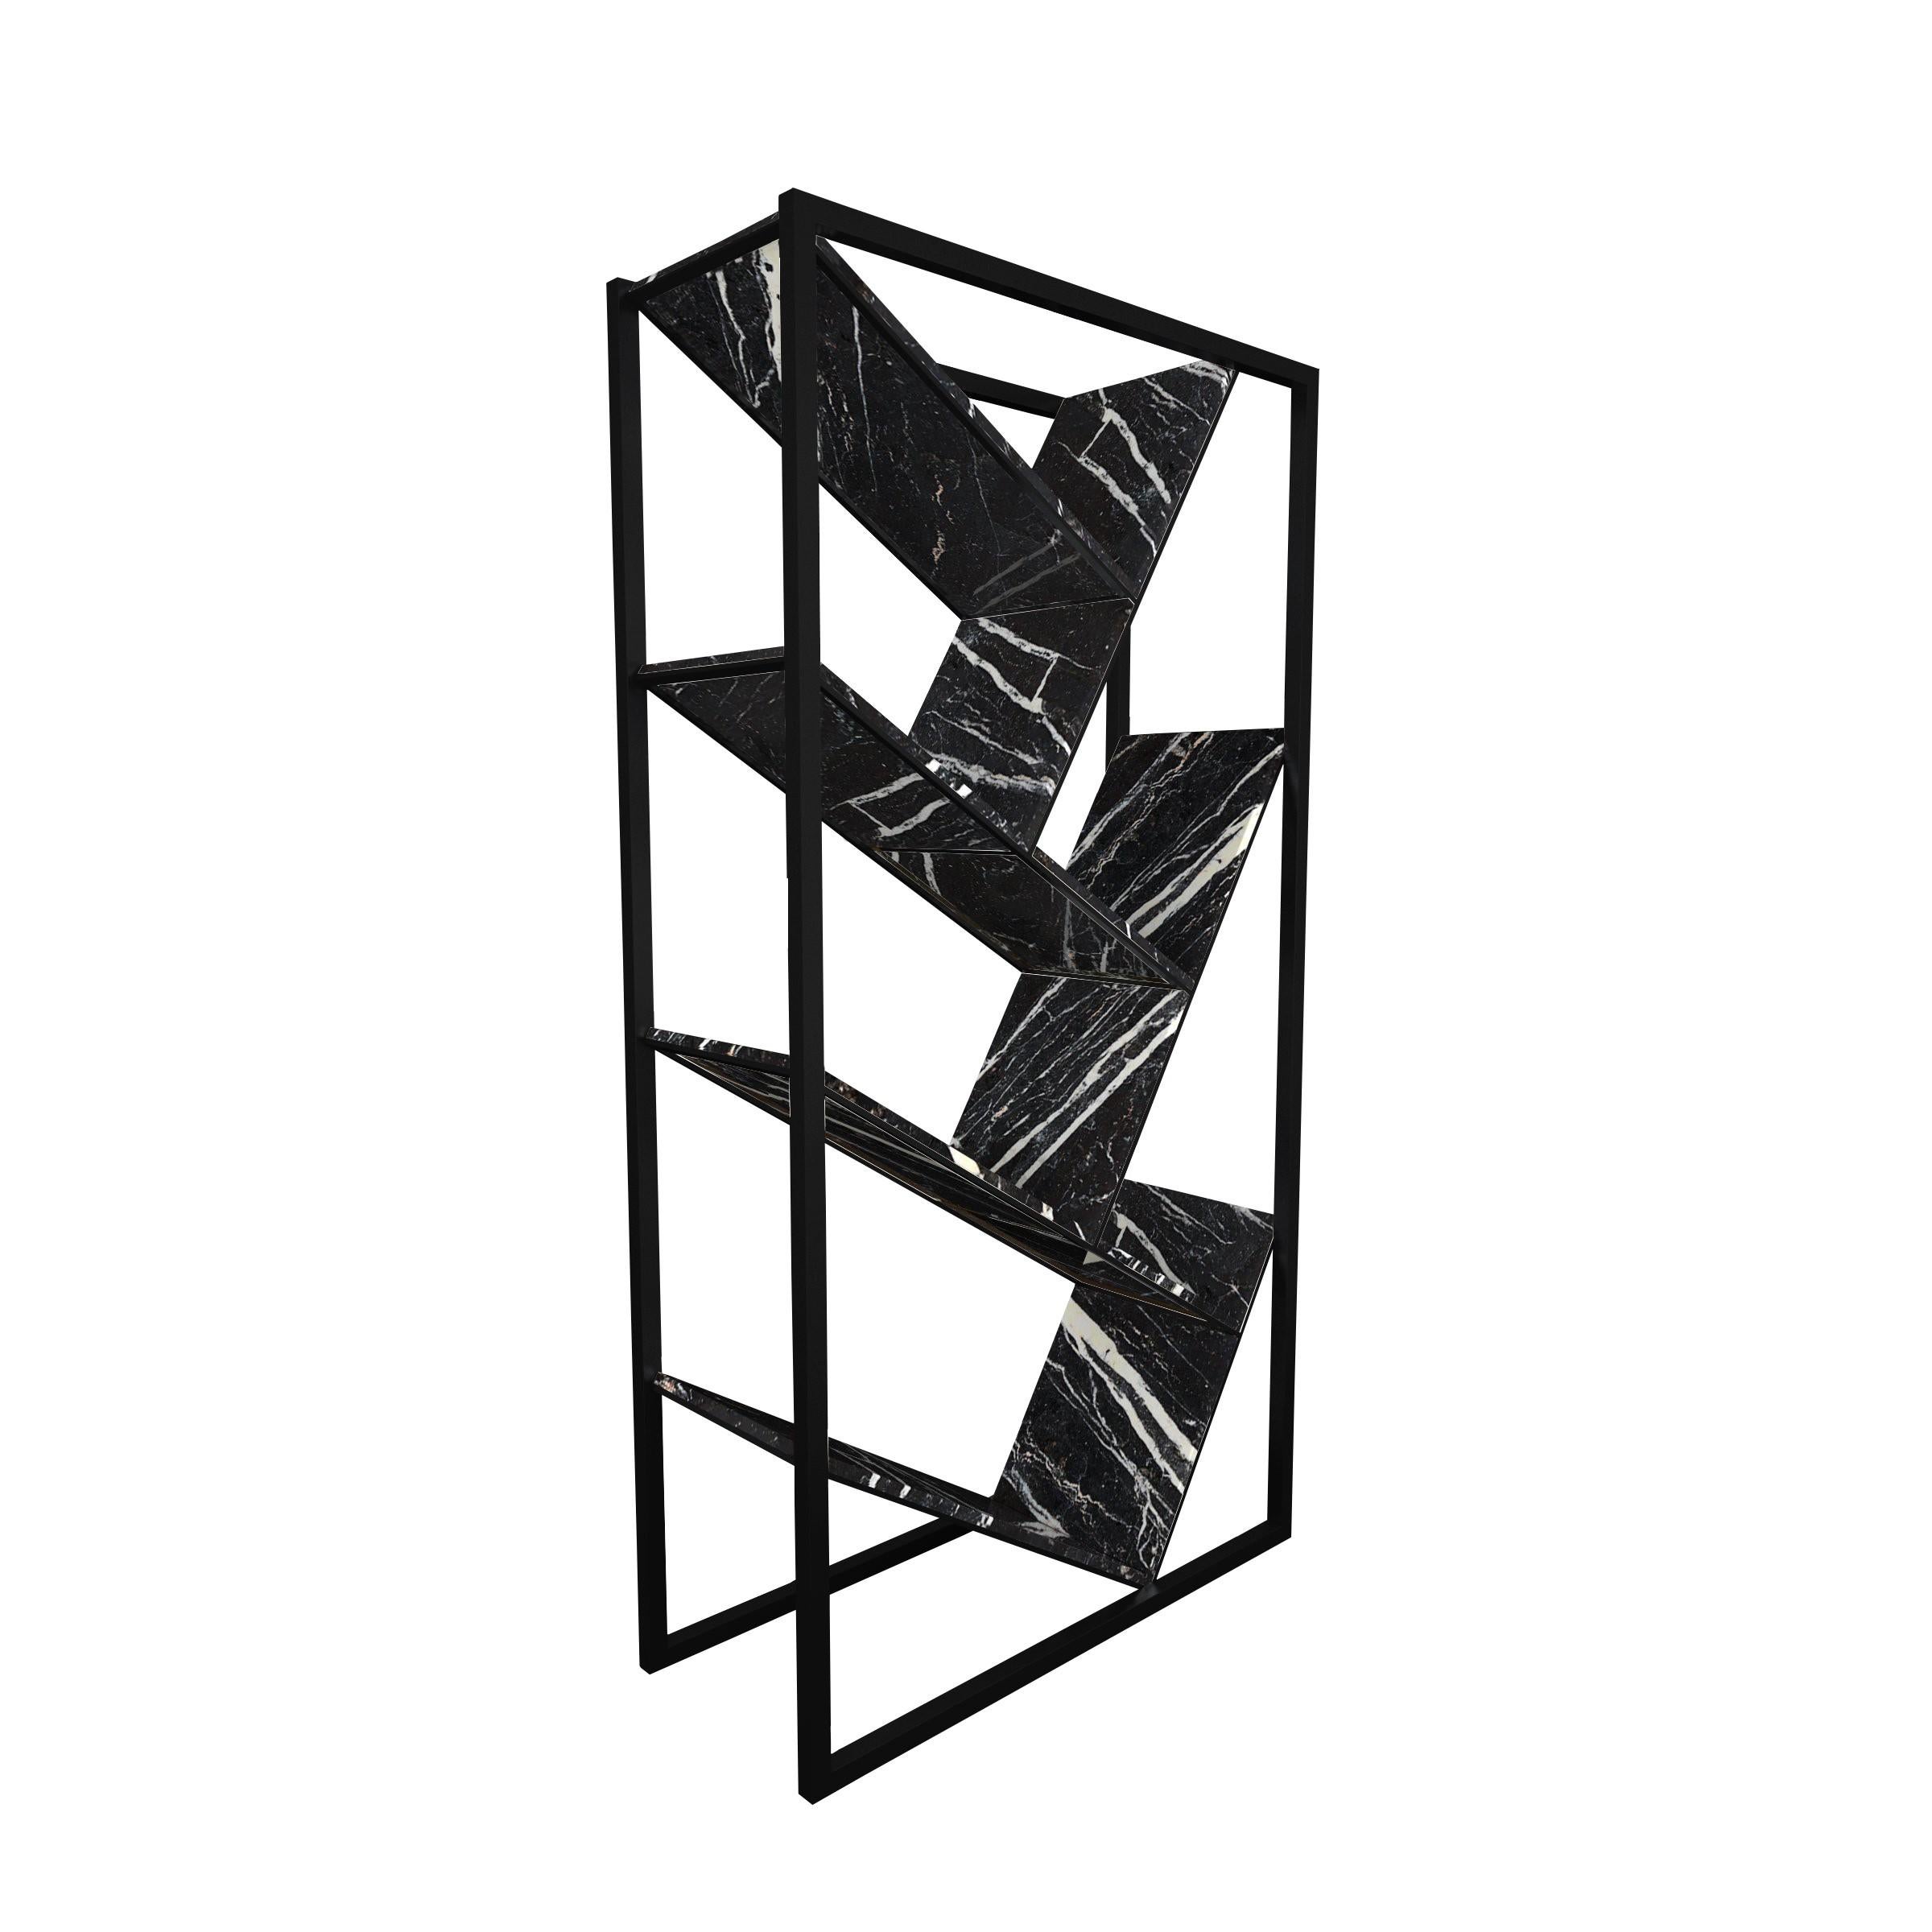 𝗣𝗿𝗼𝗱𝘂𝗰𝘁 𝗗𝗲𝘁𝗮𝗶𝗹𝘀:
Modern gestaltetes Bücherregal, bestehend aus 6 festen, diagonal angeordneten Regalböden. Das Regal ist ohne Rückenlehne und kann daher auch als Raumteiler verwendet werden, der in Kombination mit einem 2. oder